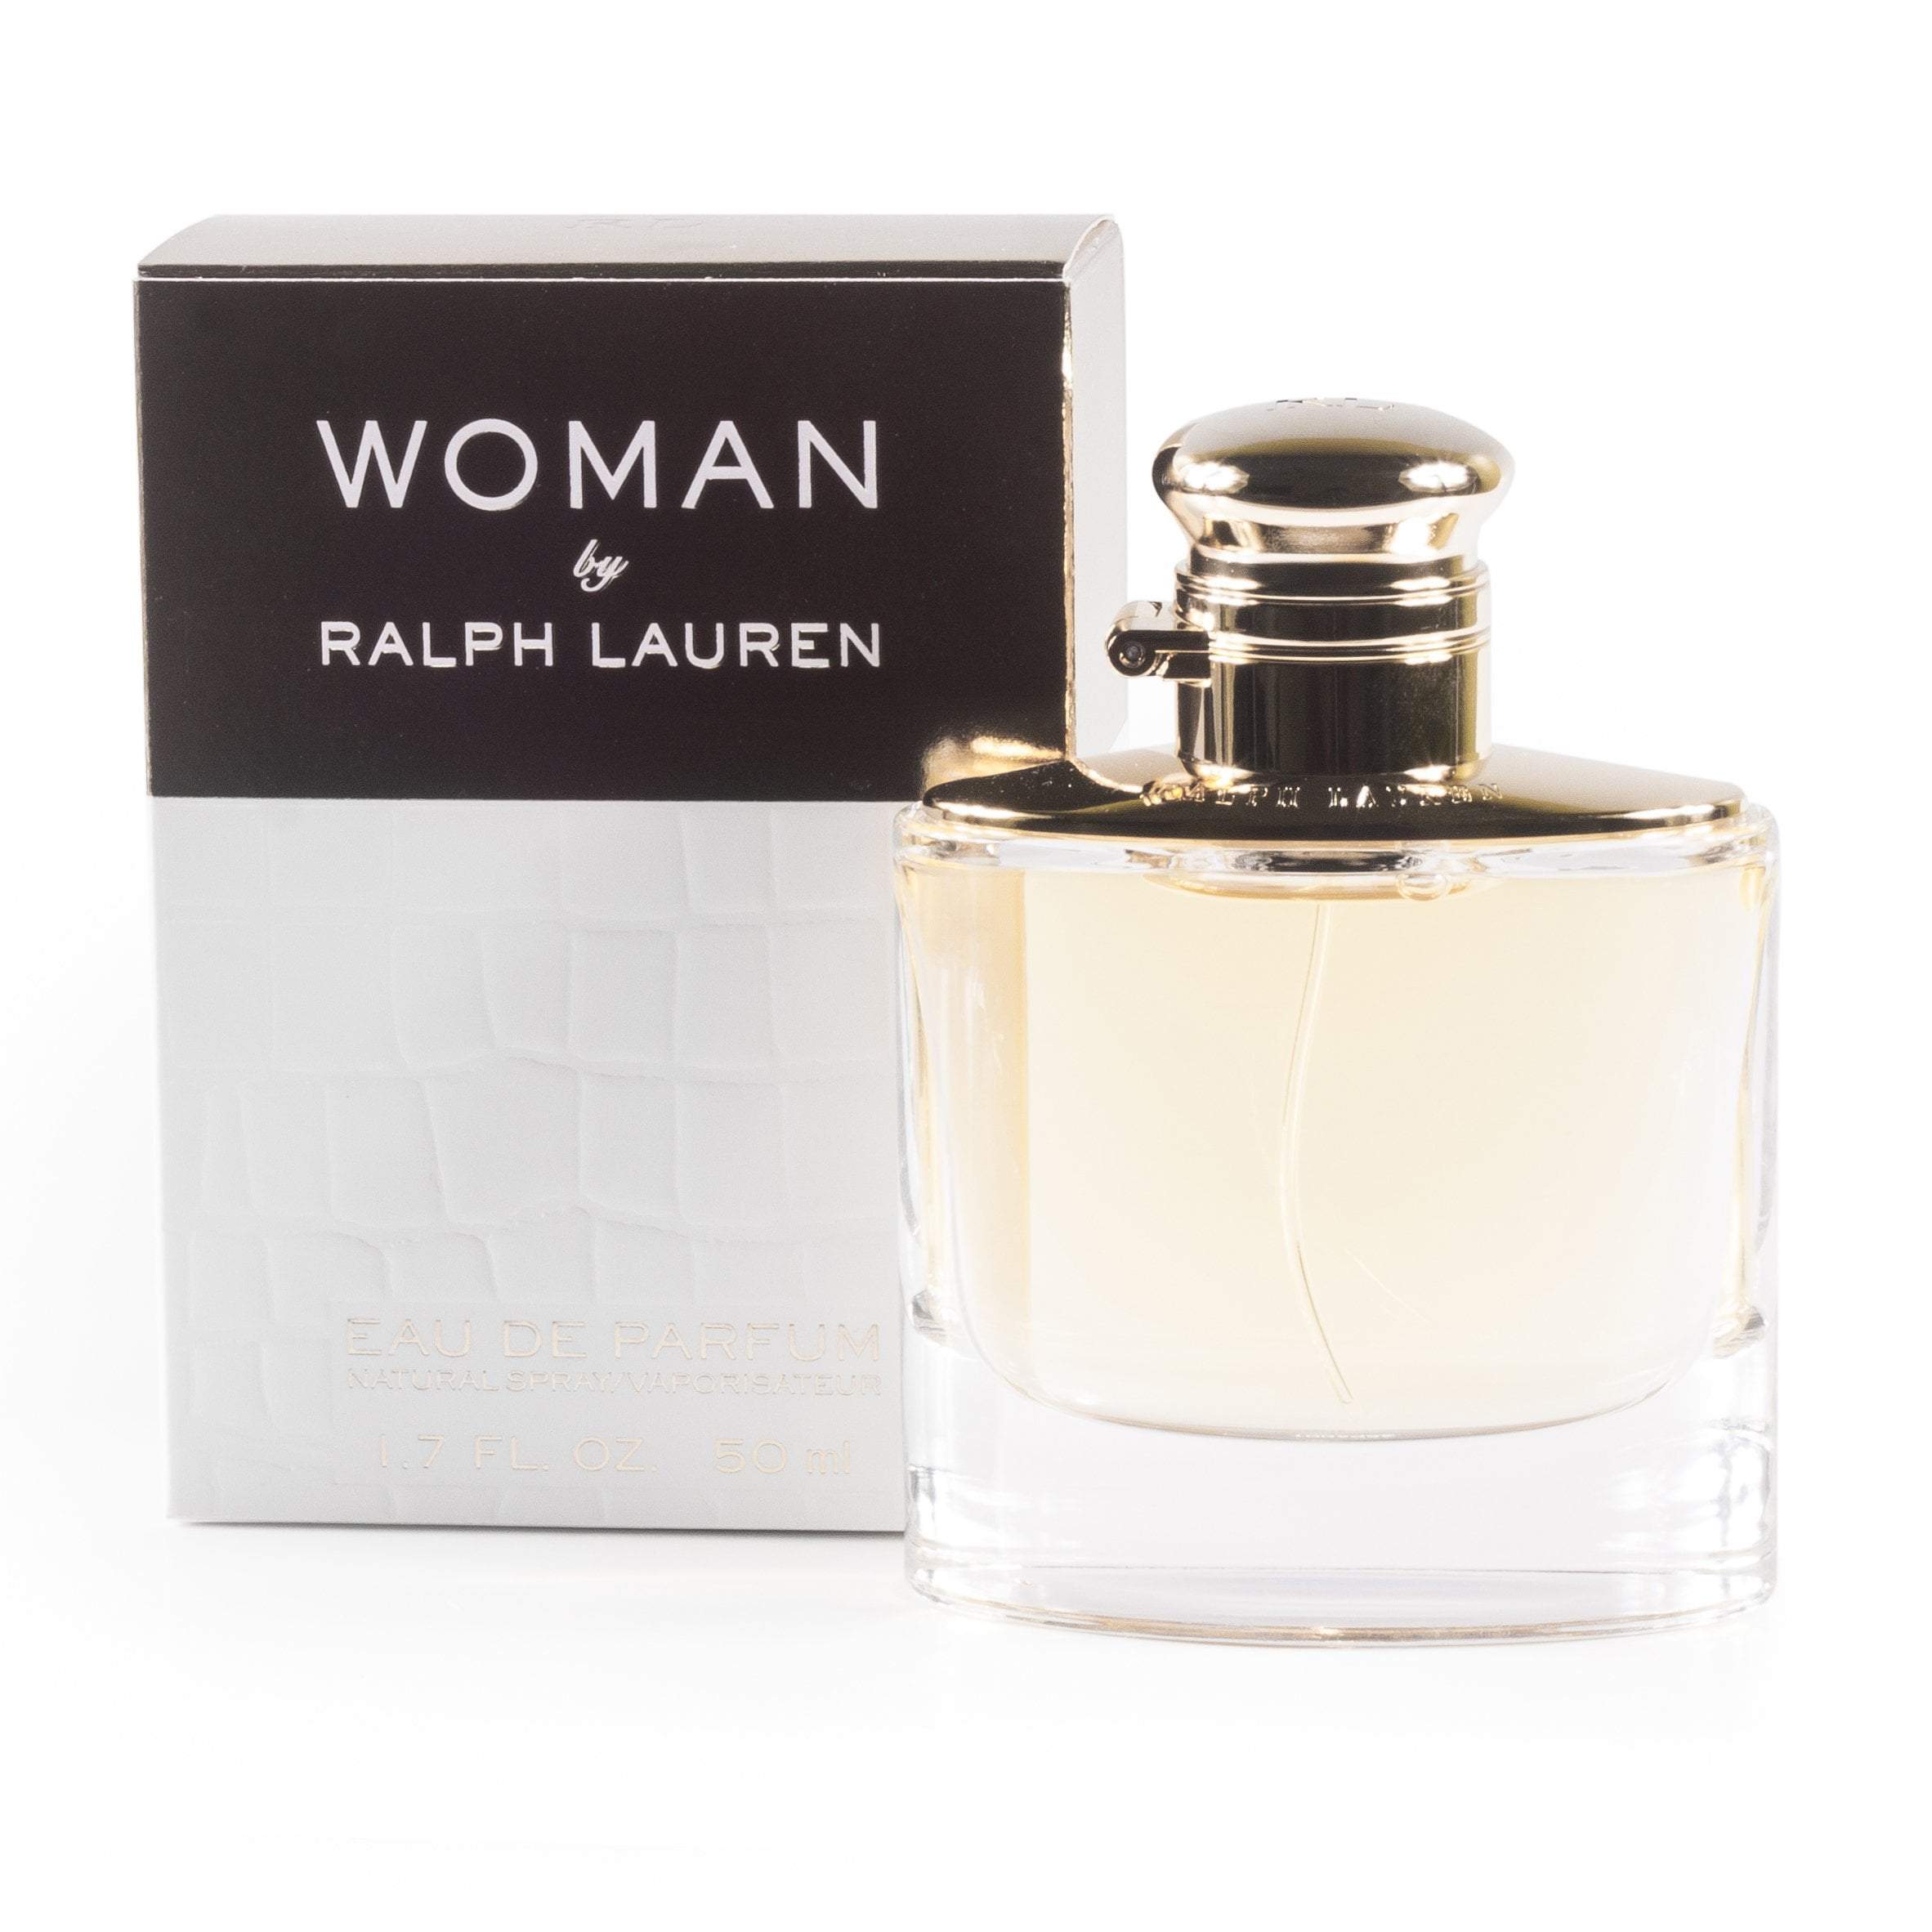 http://perfumania.com/cdn/shop/products/Lauren-Woman-Women-Eau-de-Parfum-1.7-Best-Price-Fragrance-Parfume-FragranceOutlet.com-details.jpg?v=1580848900